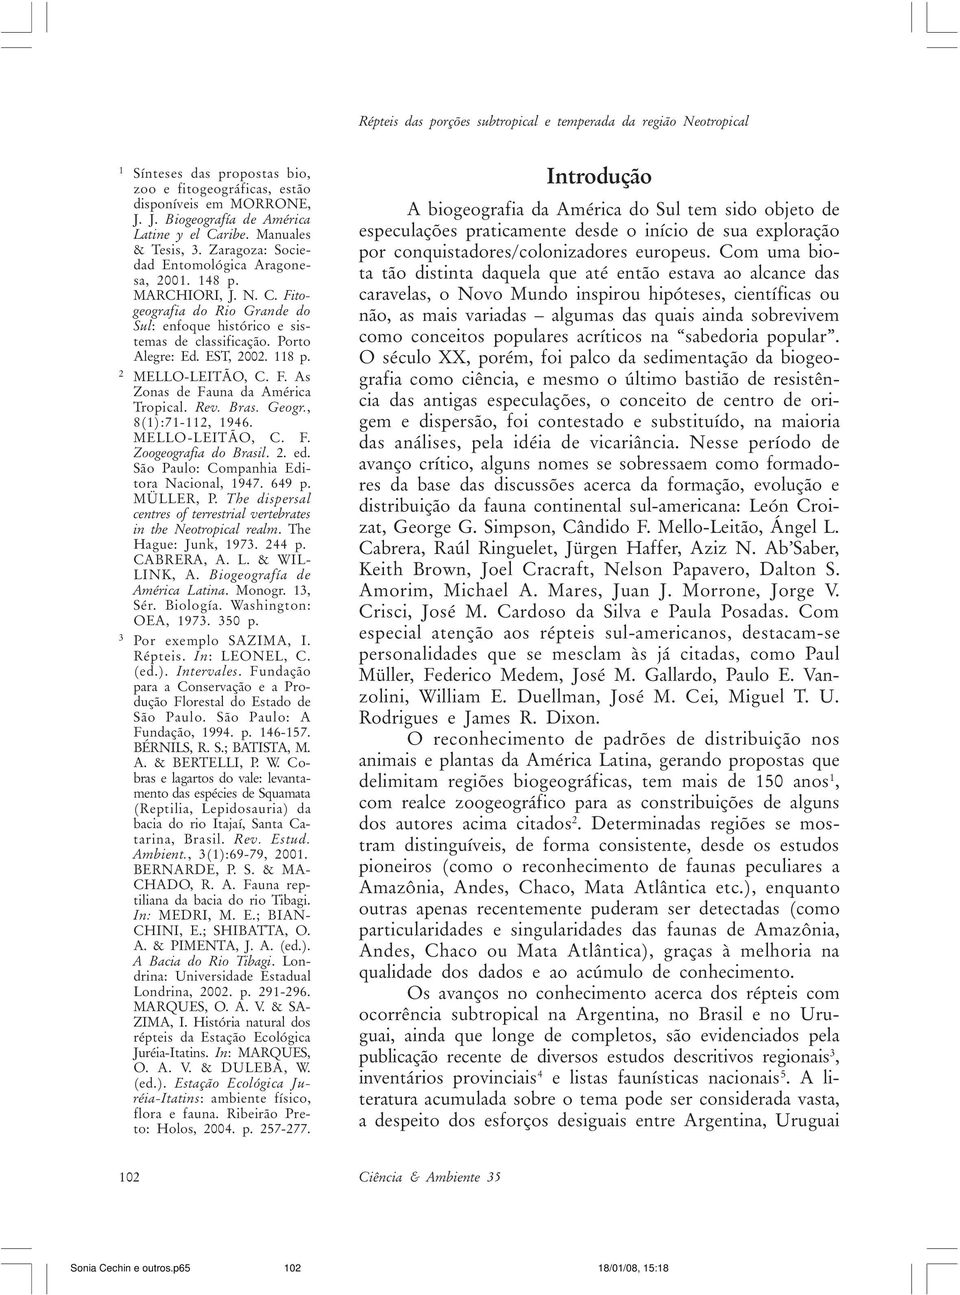 EST, 2002. 118 p. 2 MELLO-LEITÃO, C. F. As Zonas de Fauna da América Tropical. Rev. Bras. Geogr., 8(1):71-112, 1946. MELLO-LEITÃO, C. F. Zoogeografia do Brasil. 2. ed.